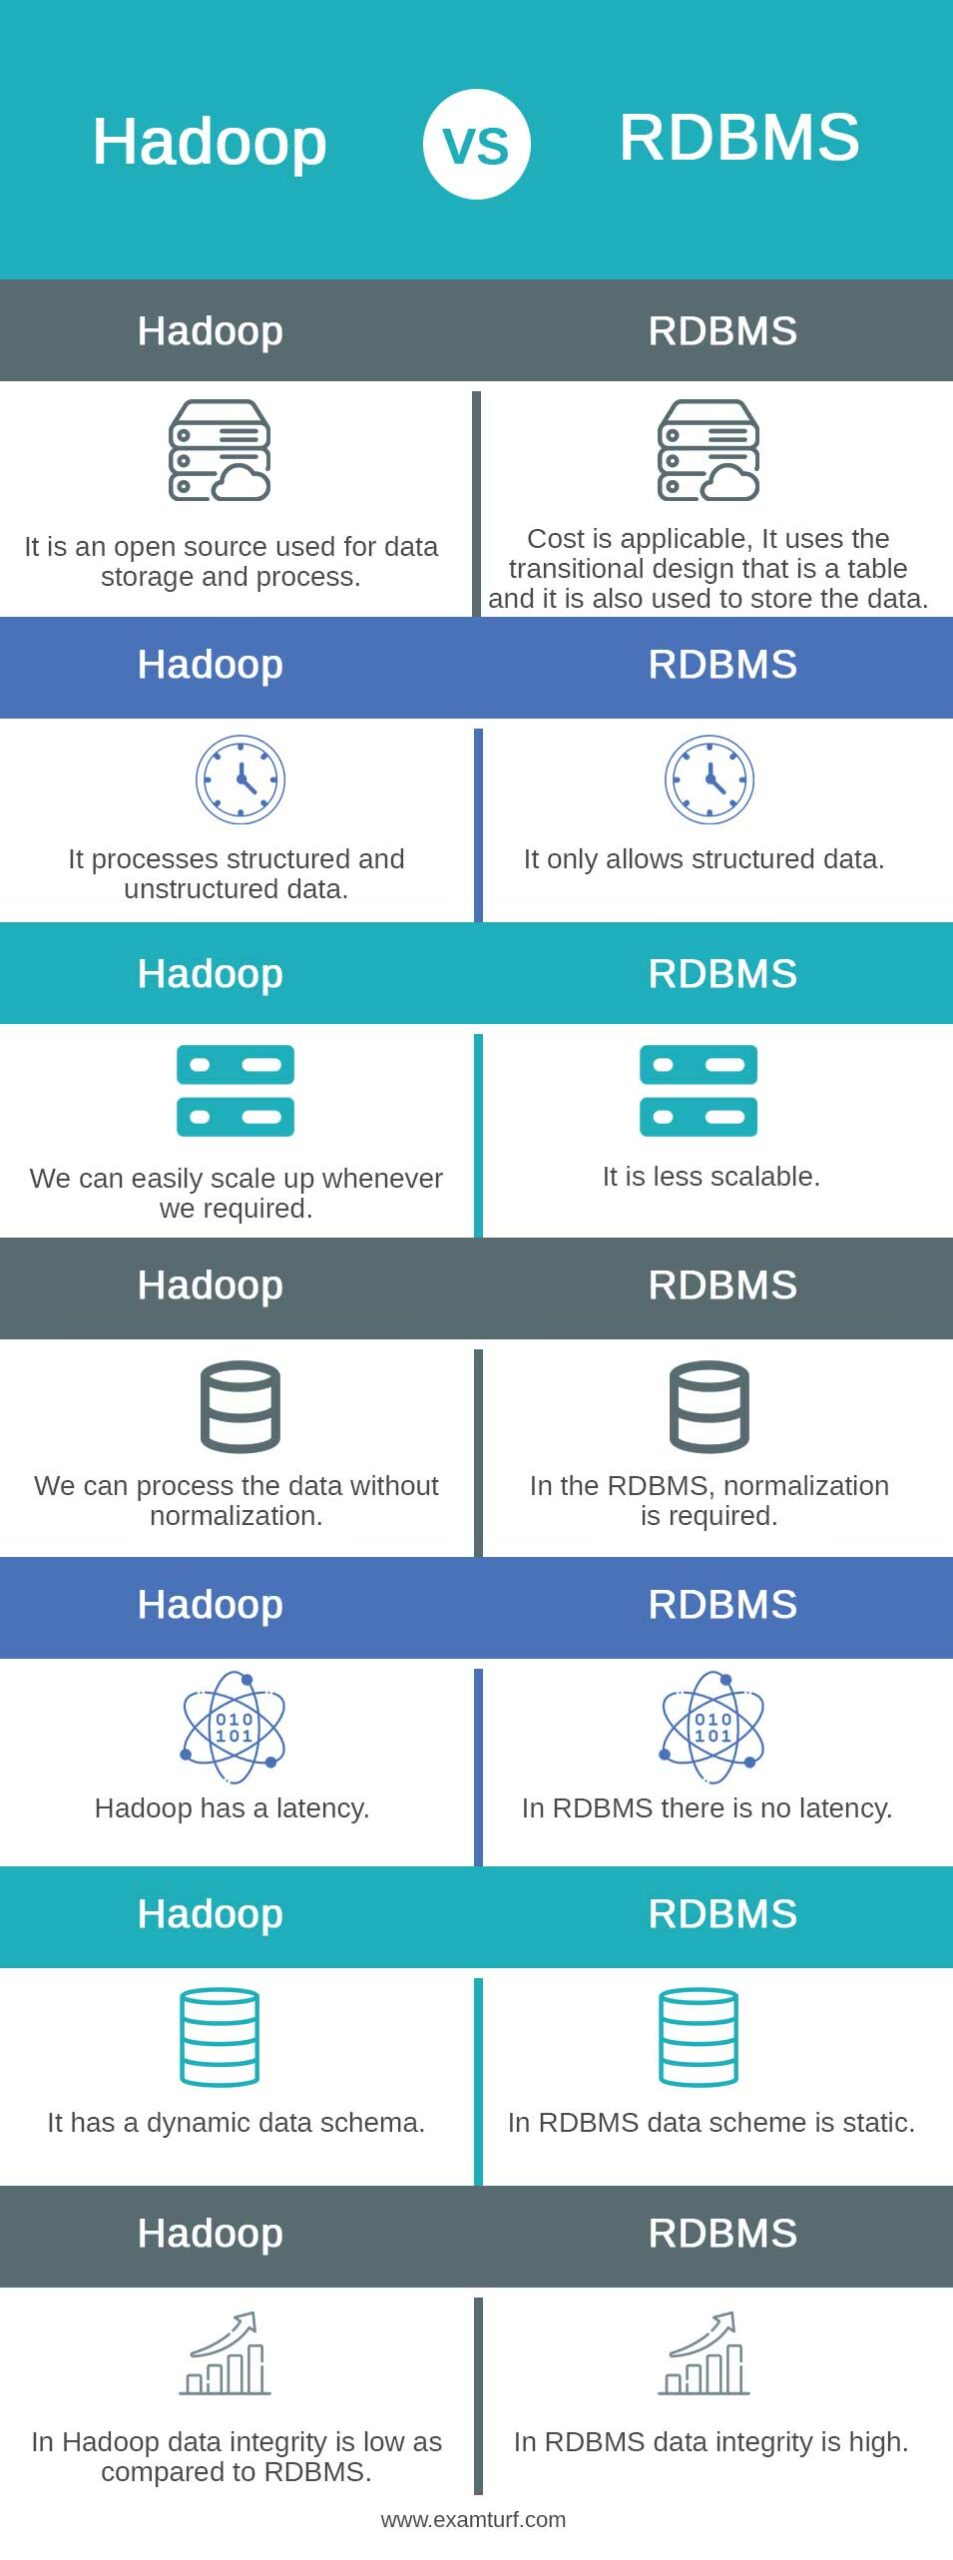 Hadoop-vs-RDBMS-info